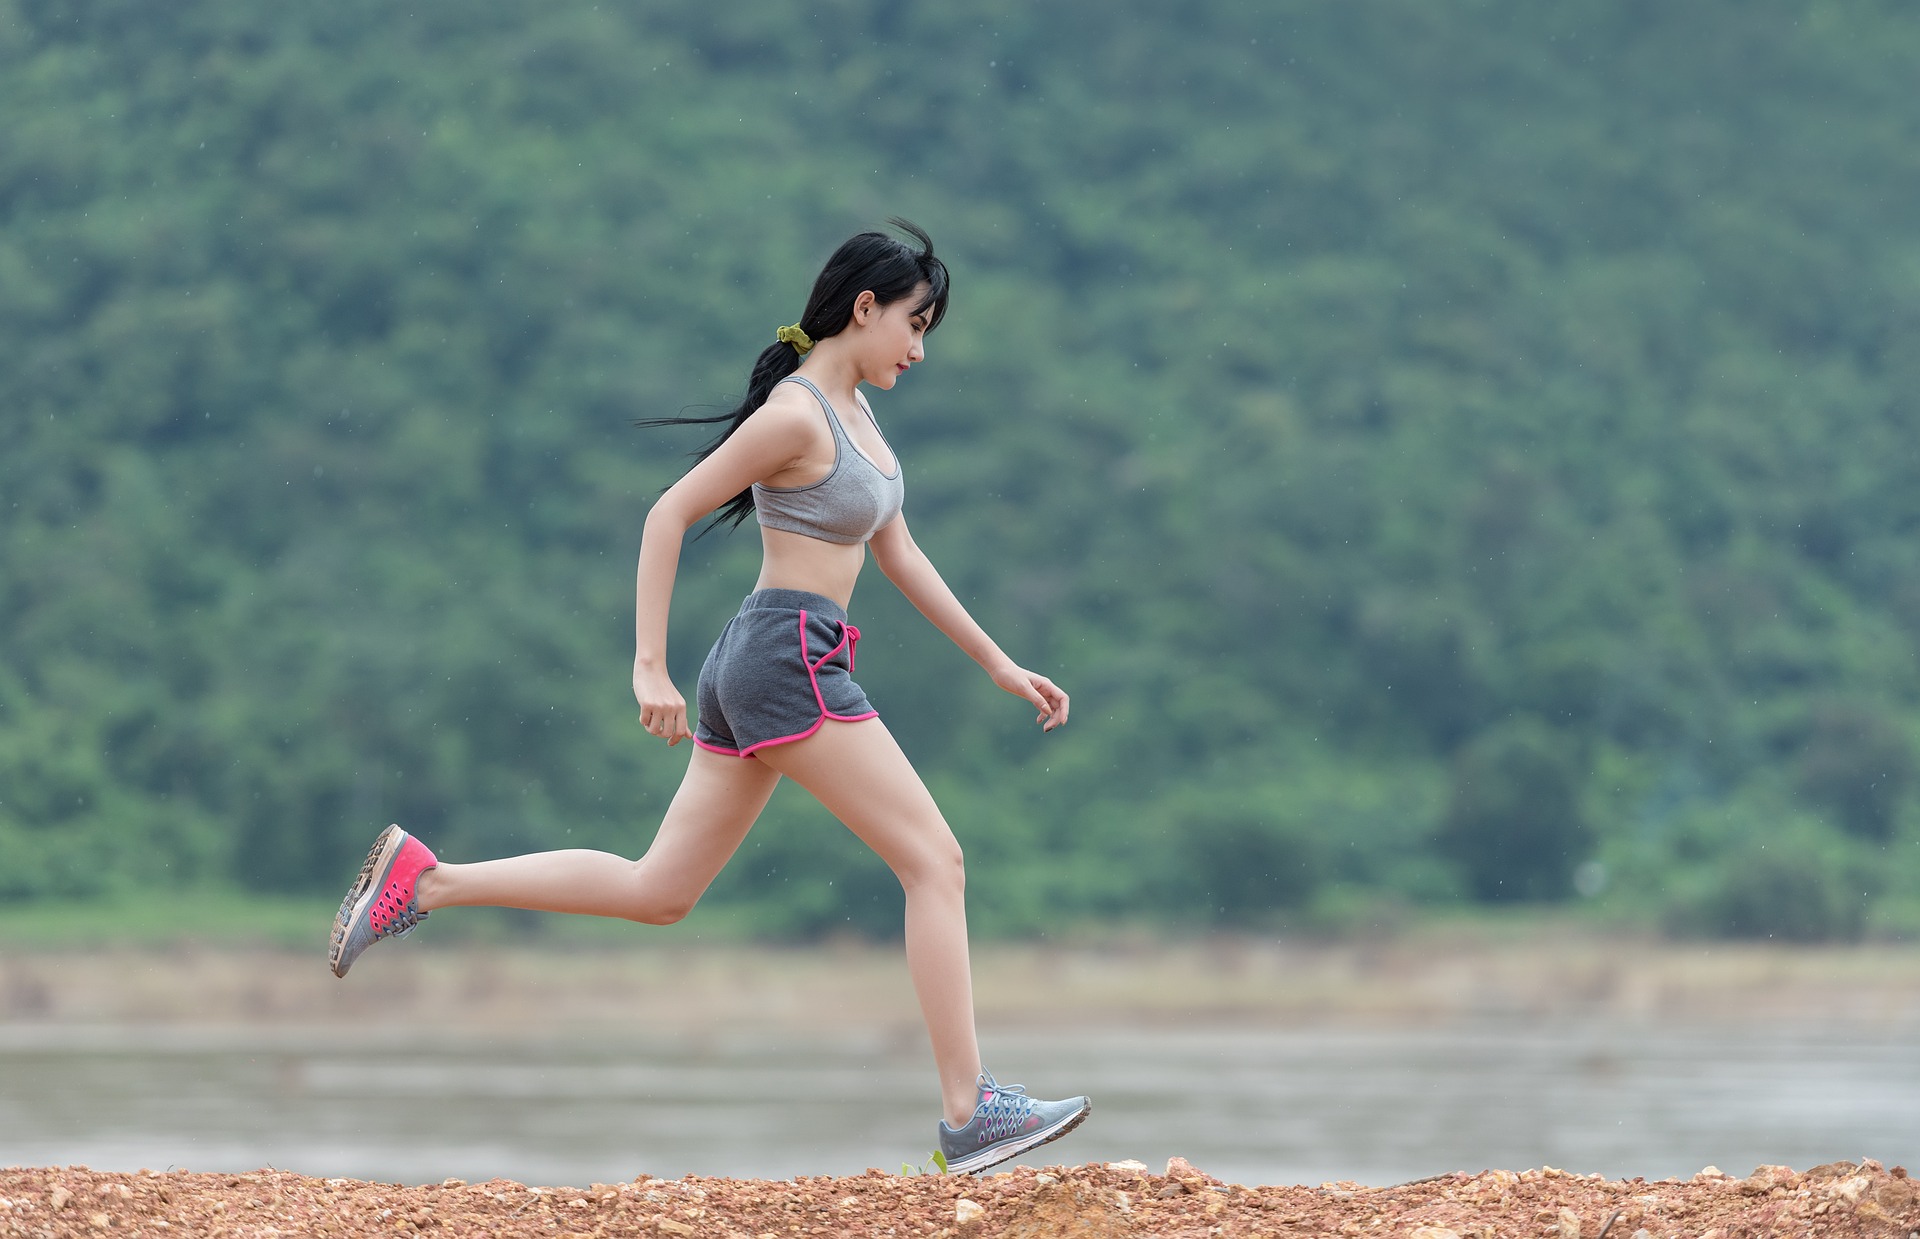 Camminata veloce: come dimagrire in modo sano